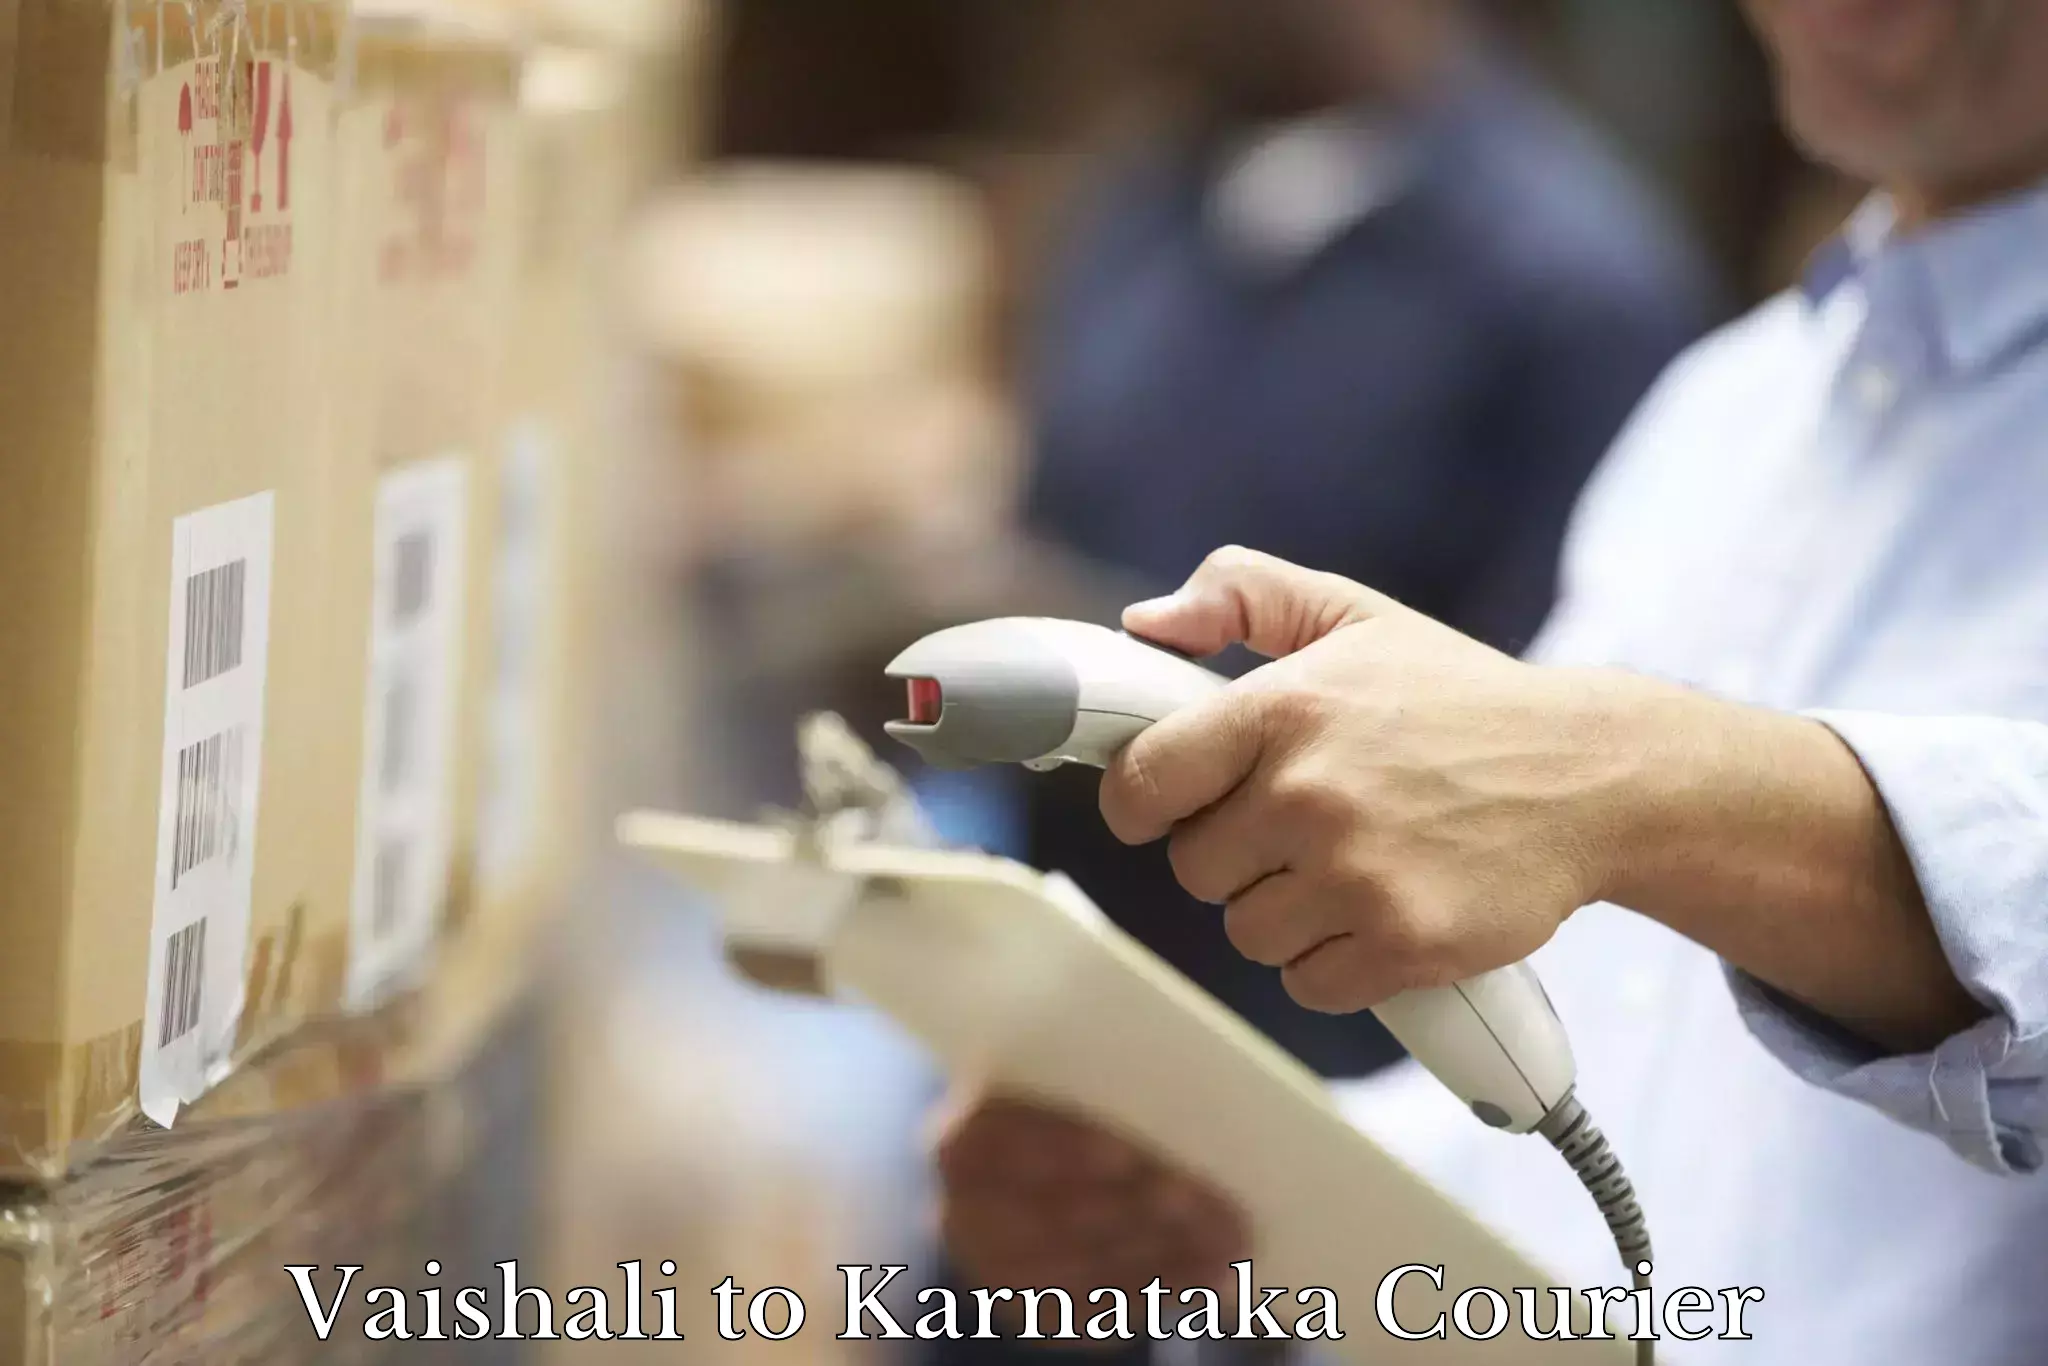 Local delivery service Vaishali to Karnataka